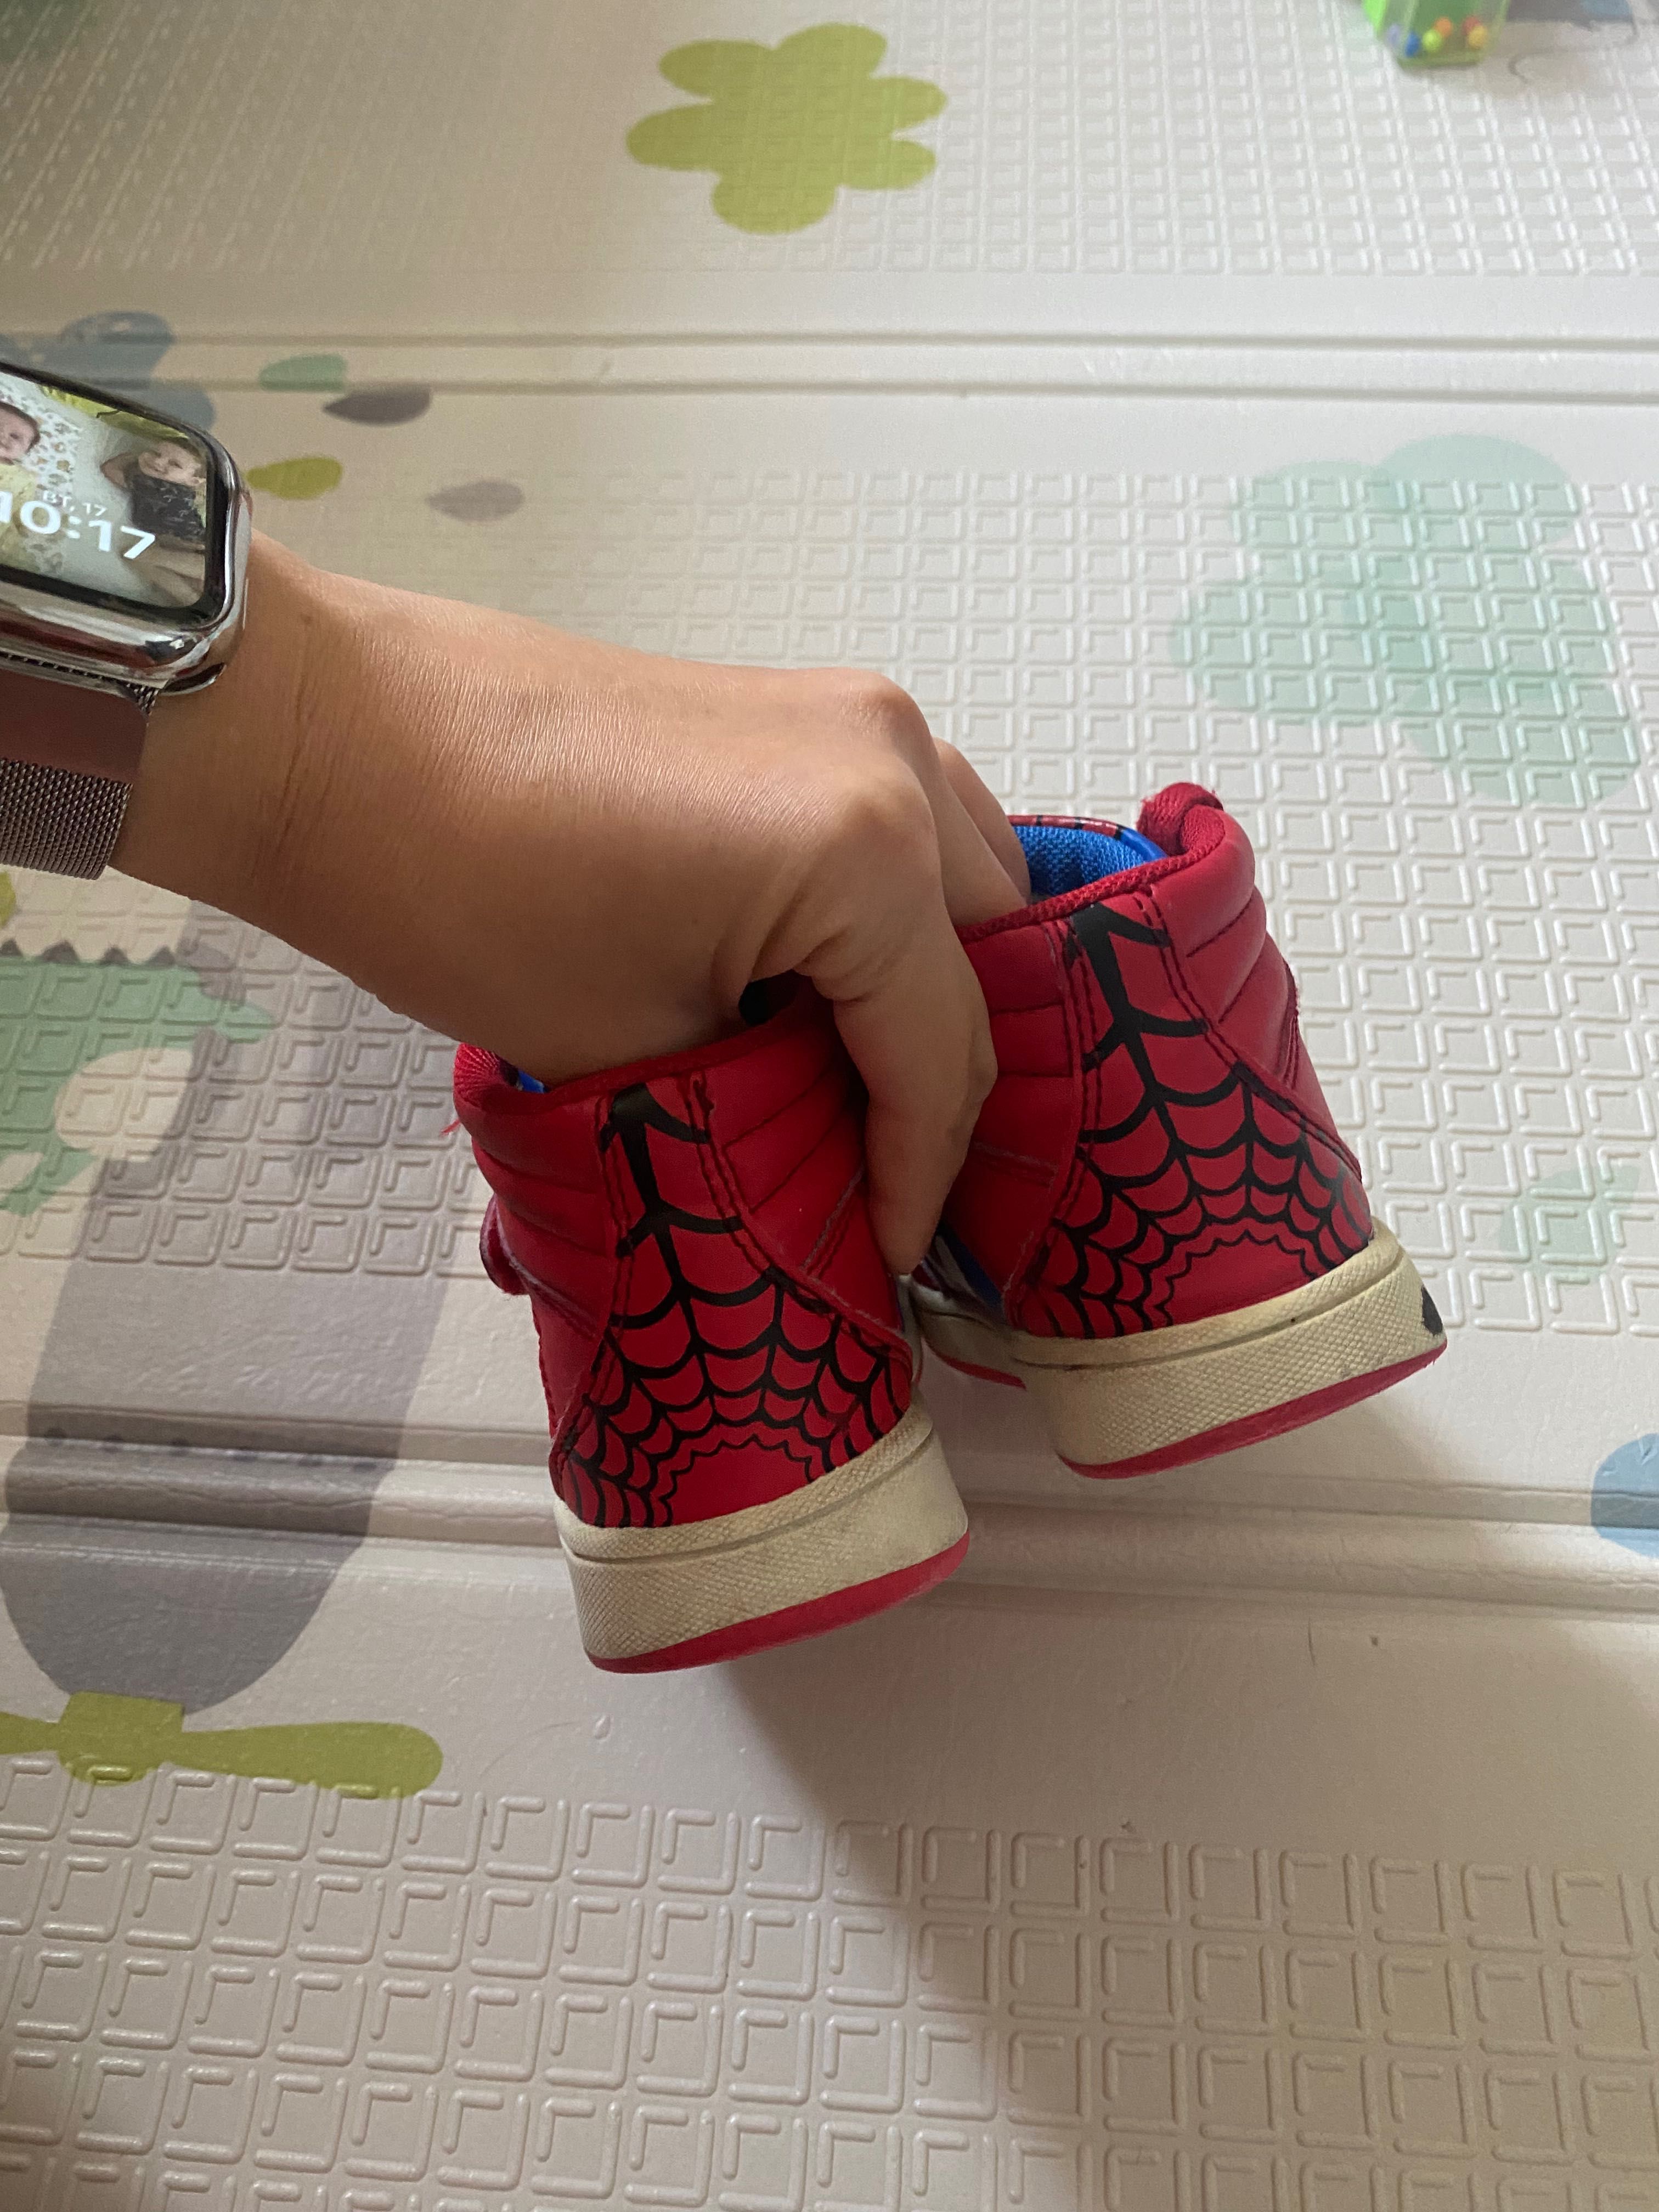 Buty dla chłopca 16 cm ^Spider-Man^